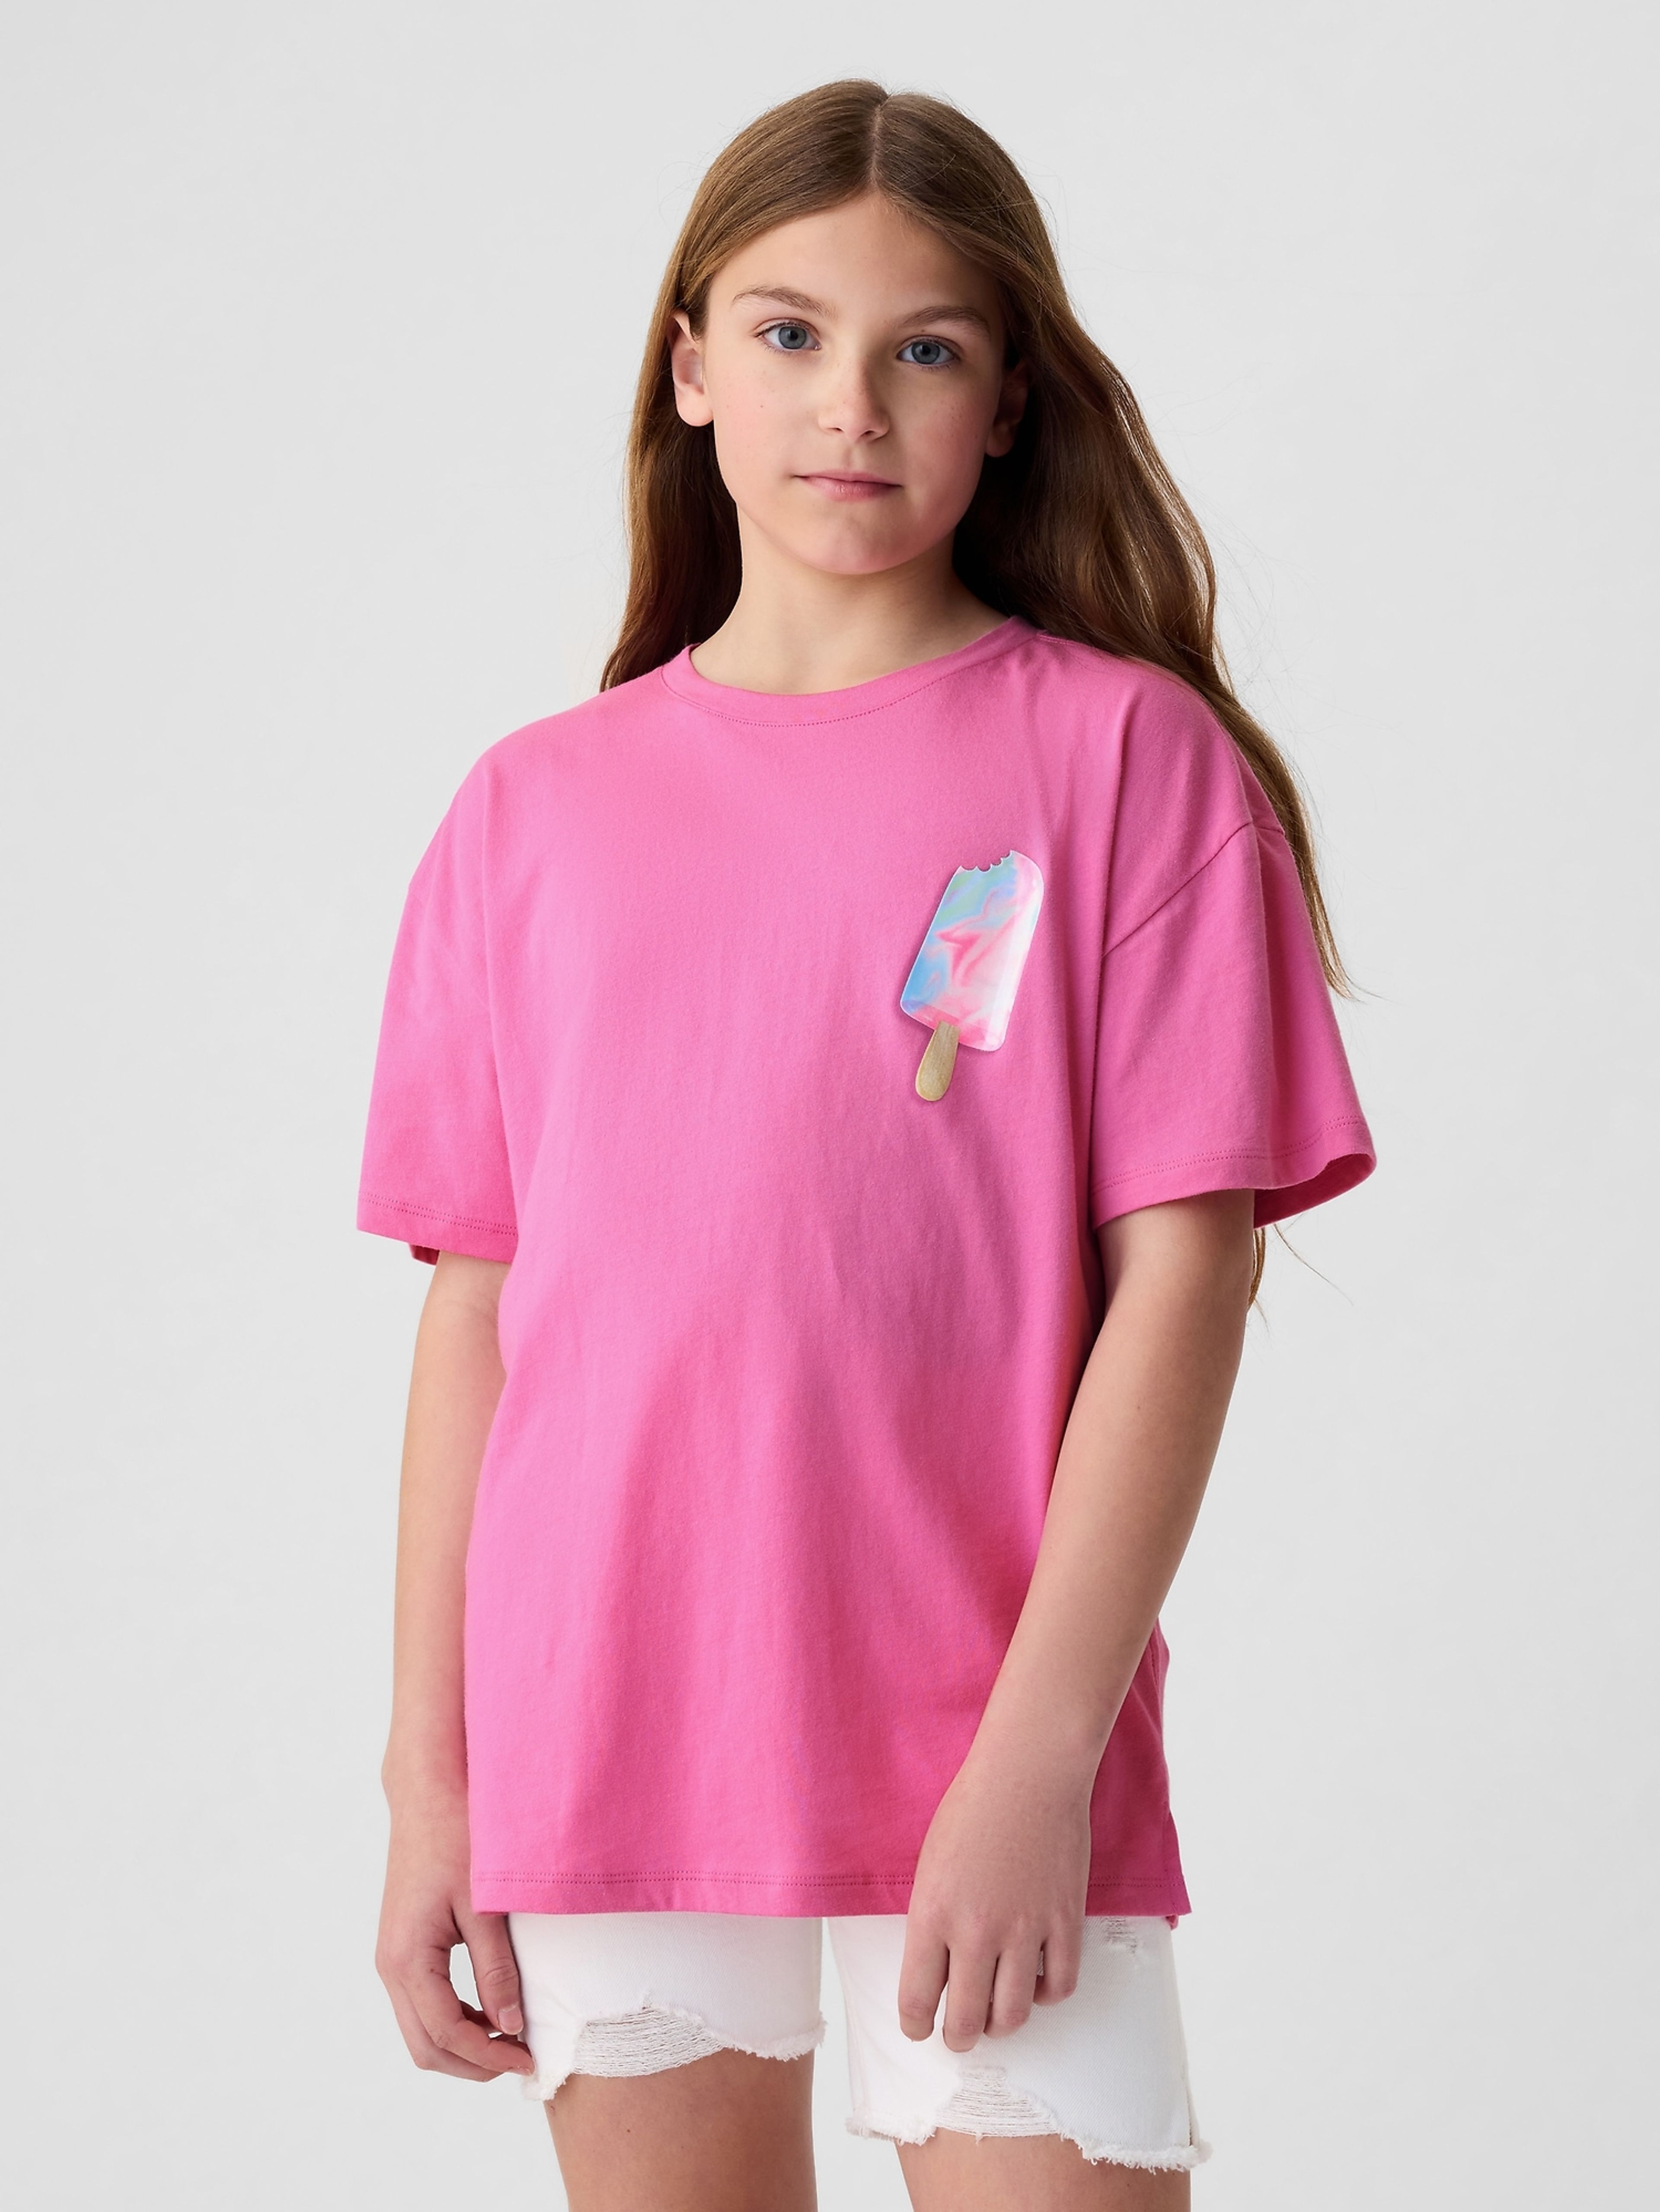 Kinder-T-Shirt aus Baumwolle